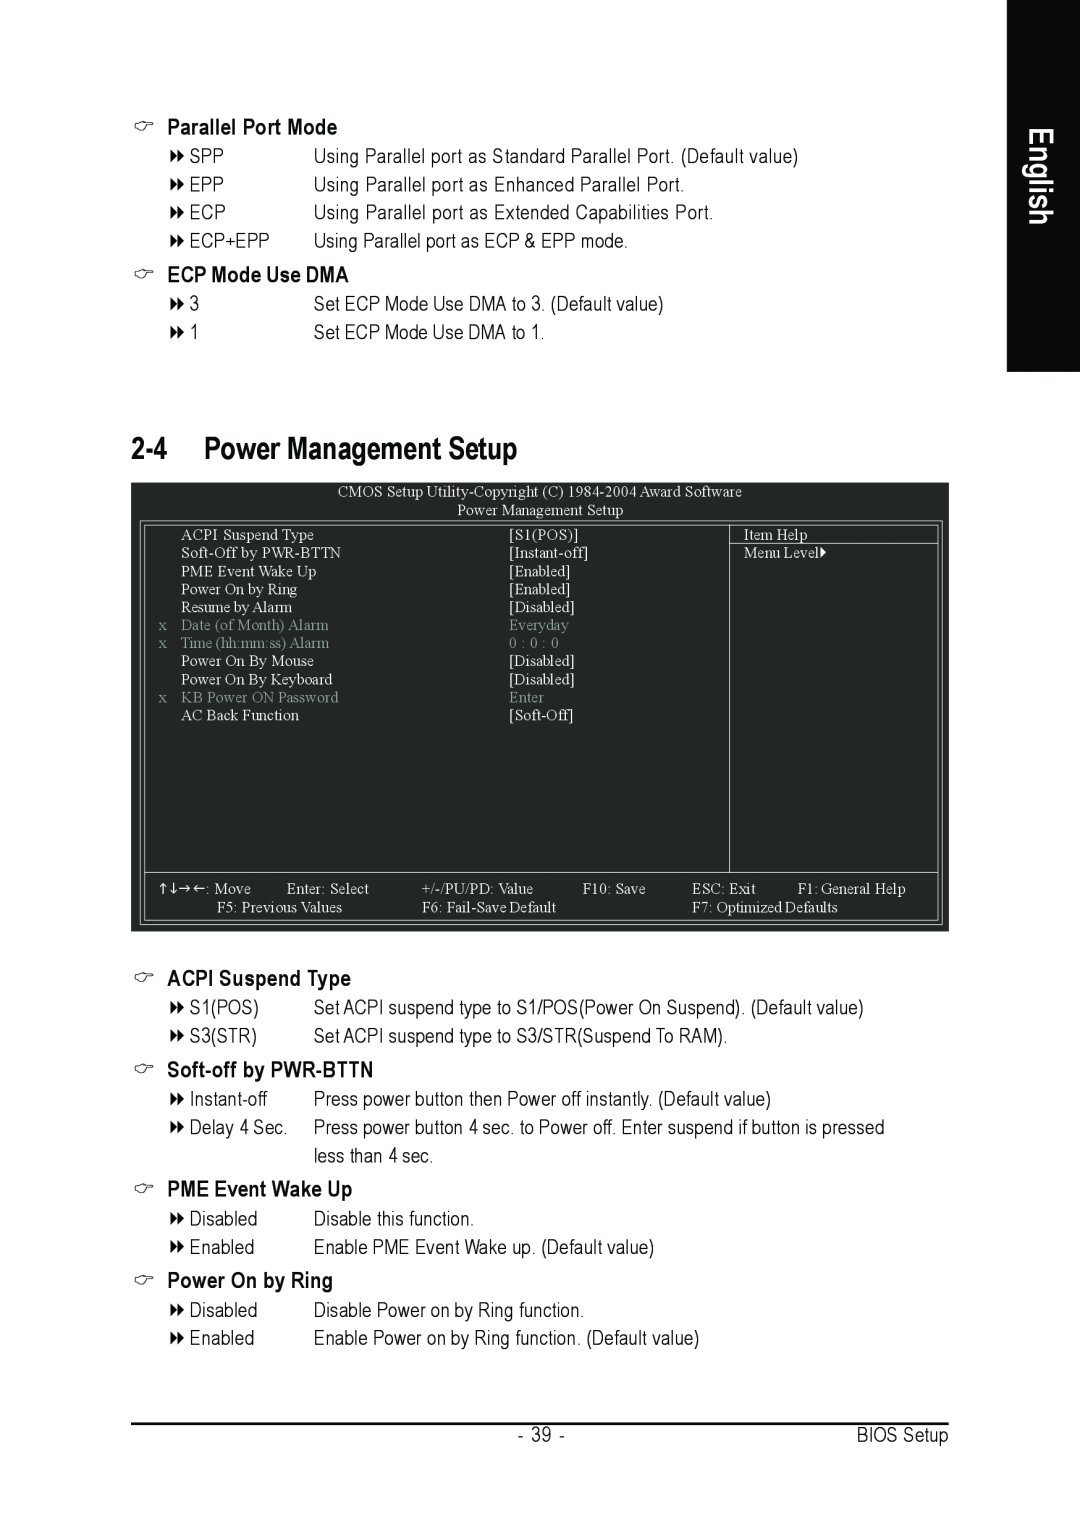 Gigabyte GA-8I915P-MF Power Management Setup, Parallel Port Mode, ECP Mode Use DMA, ACPI Suspend Type, PME Event Wake Up 